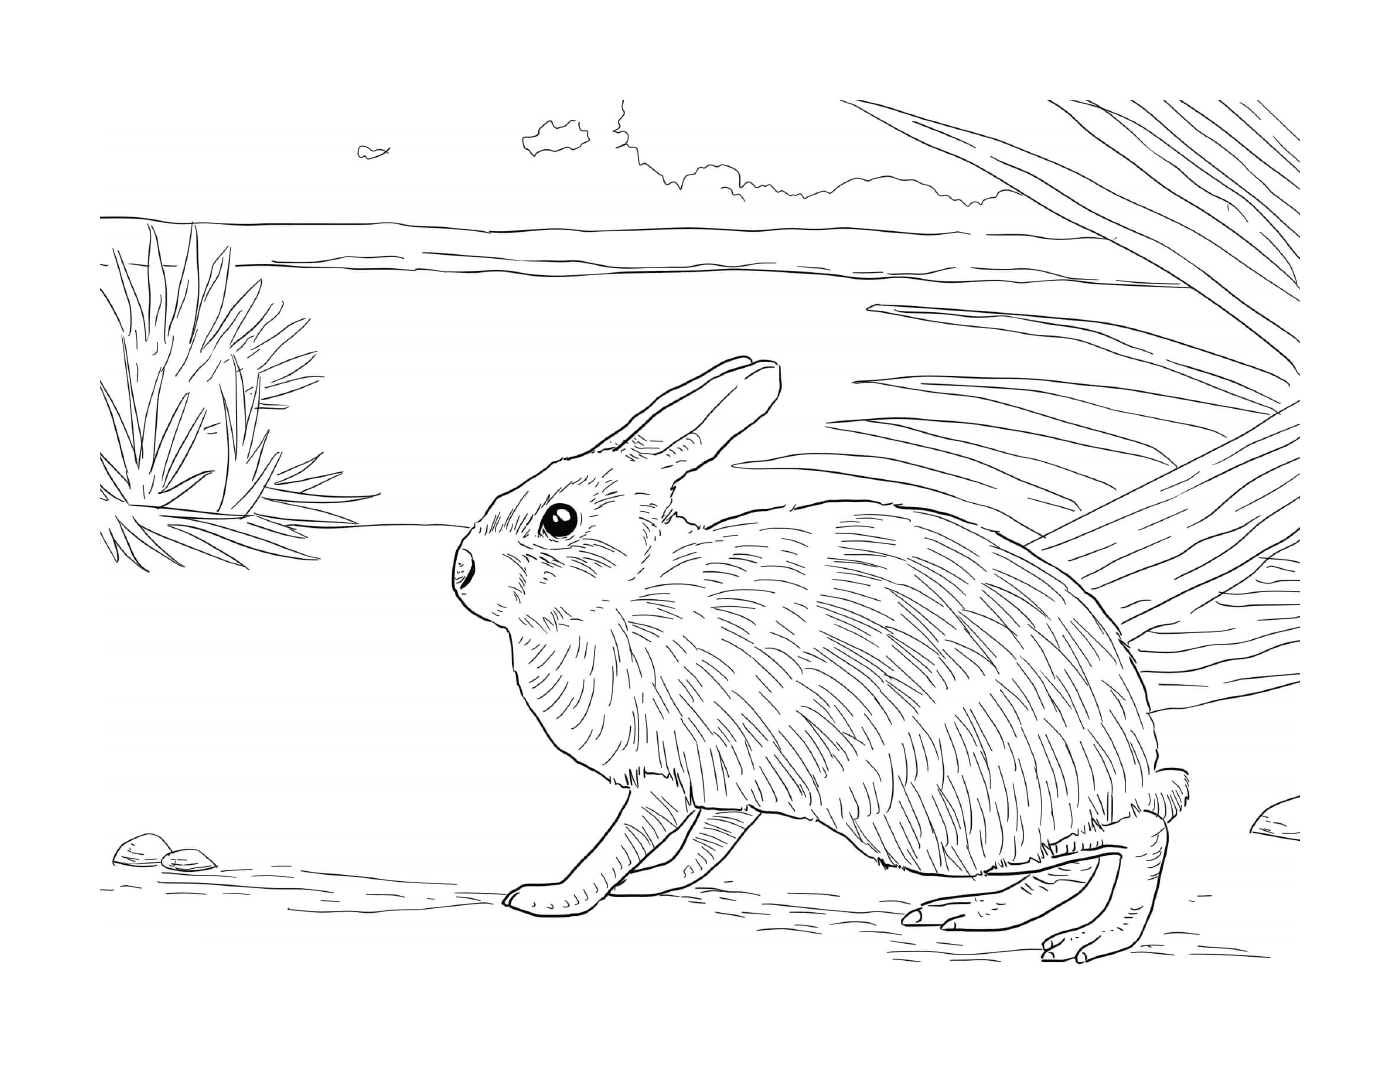  Coniglio realistico in un ambiente naturale 